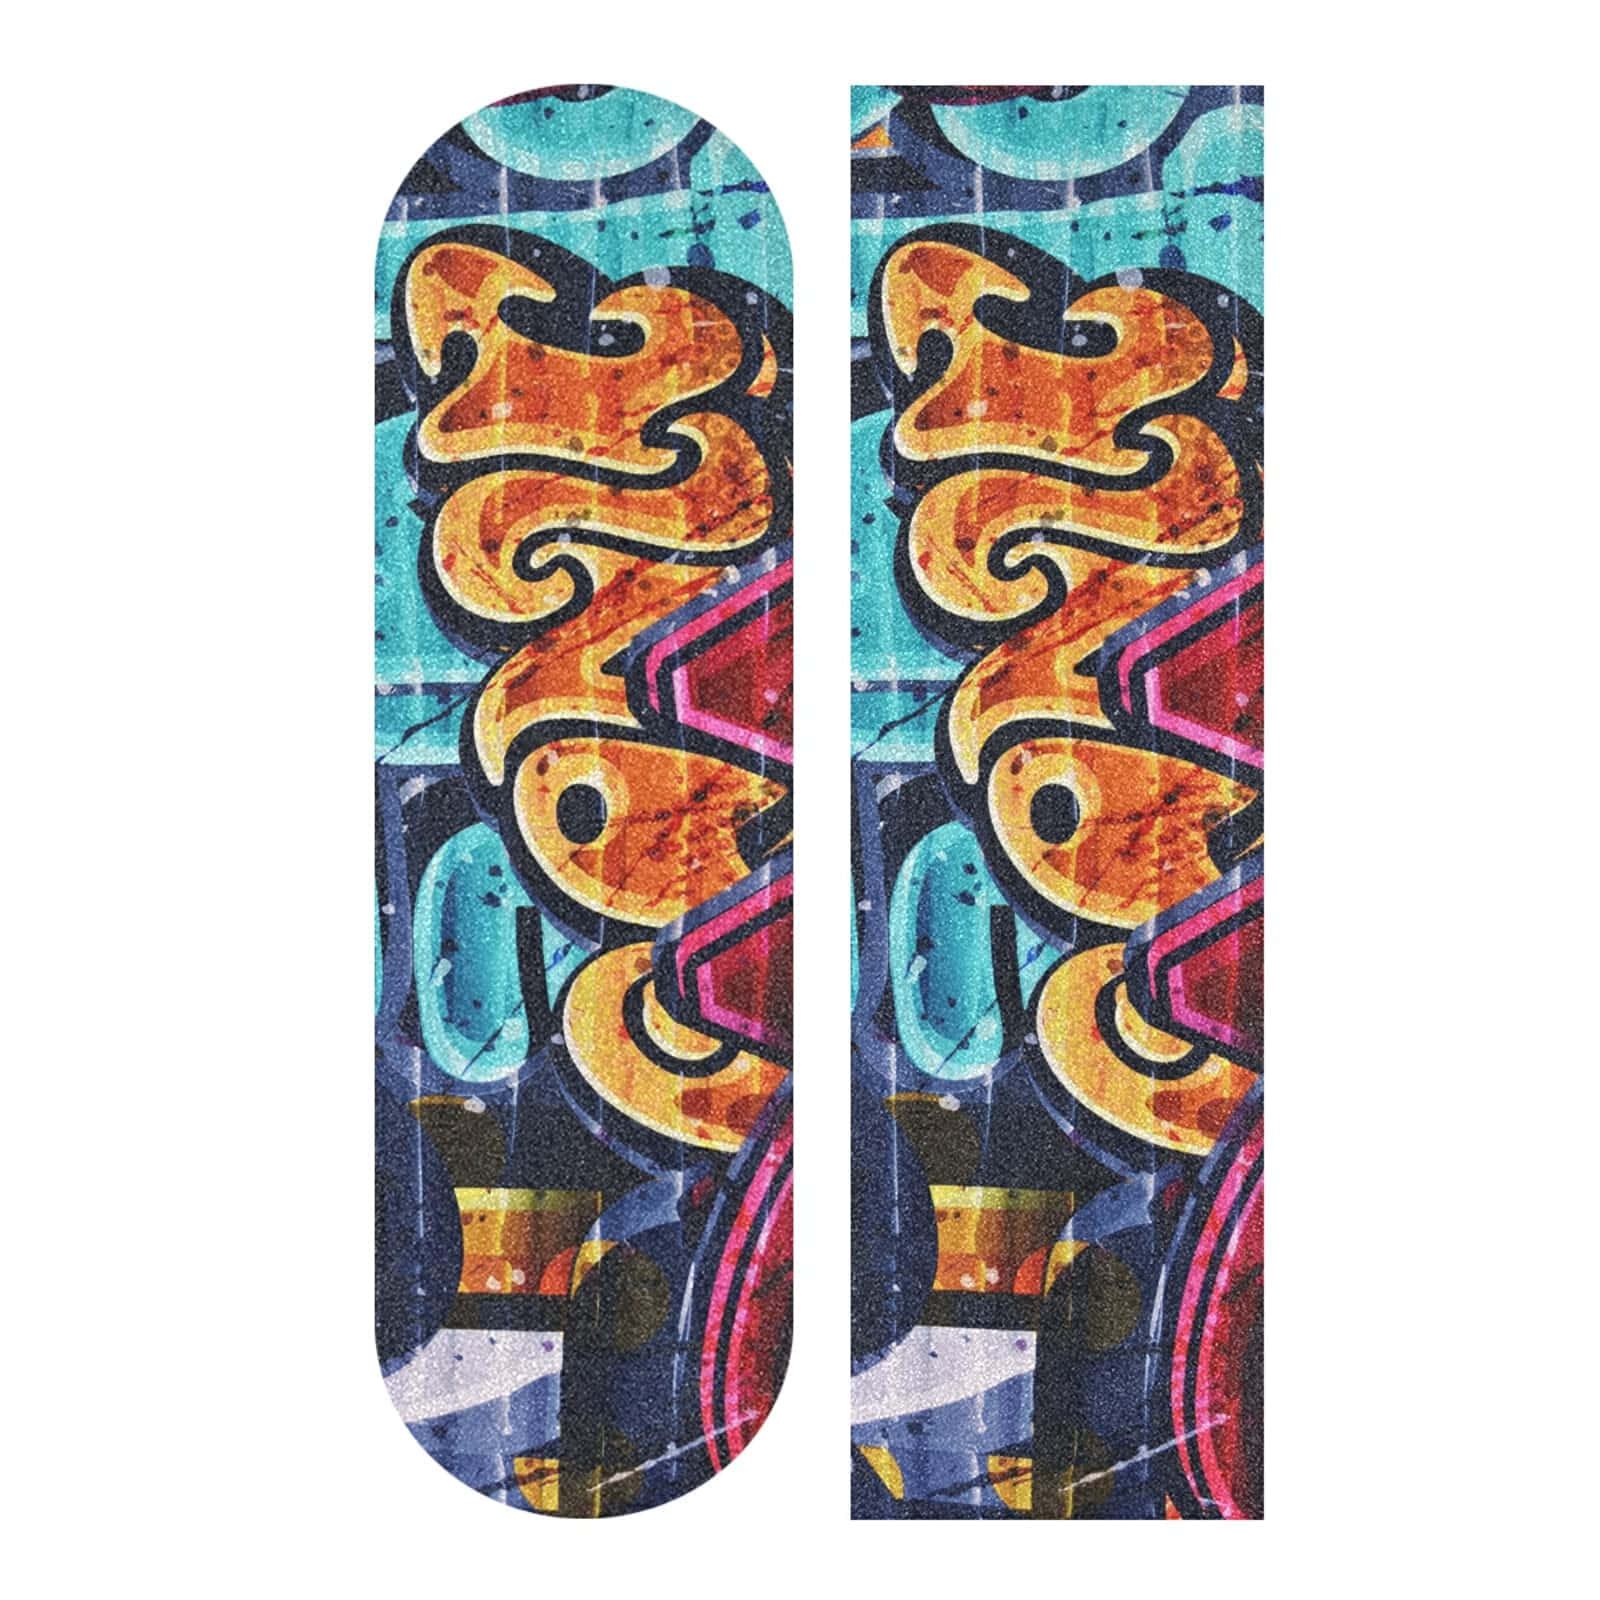 Graffiti Art Skateboard Deck Design Wallpaper